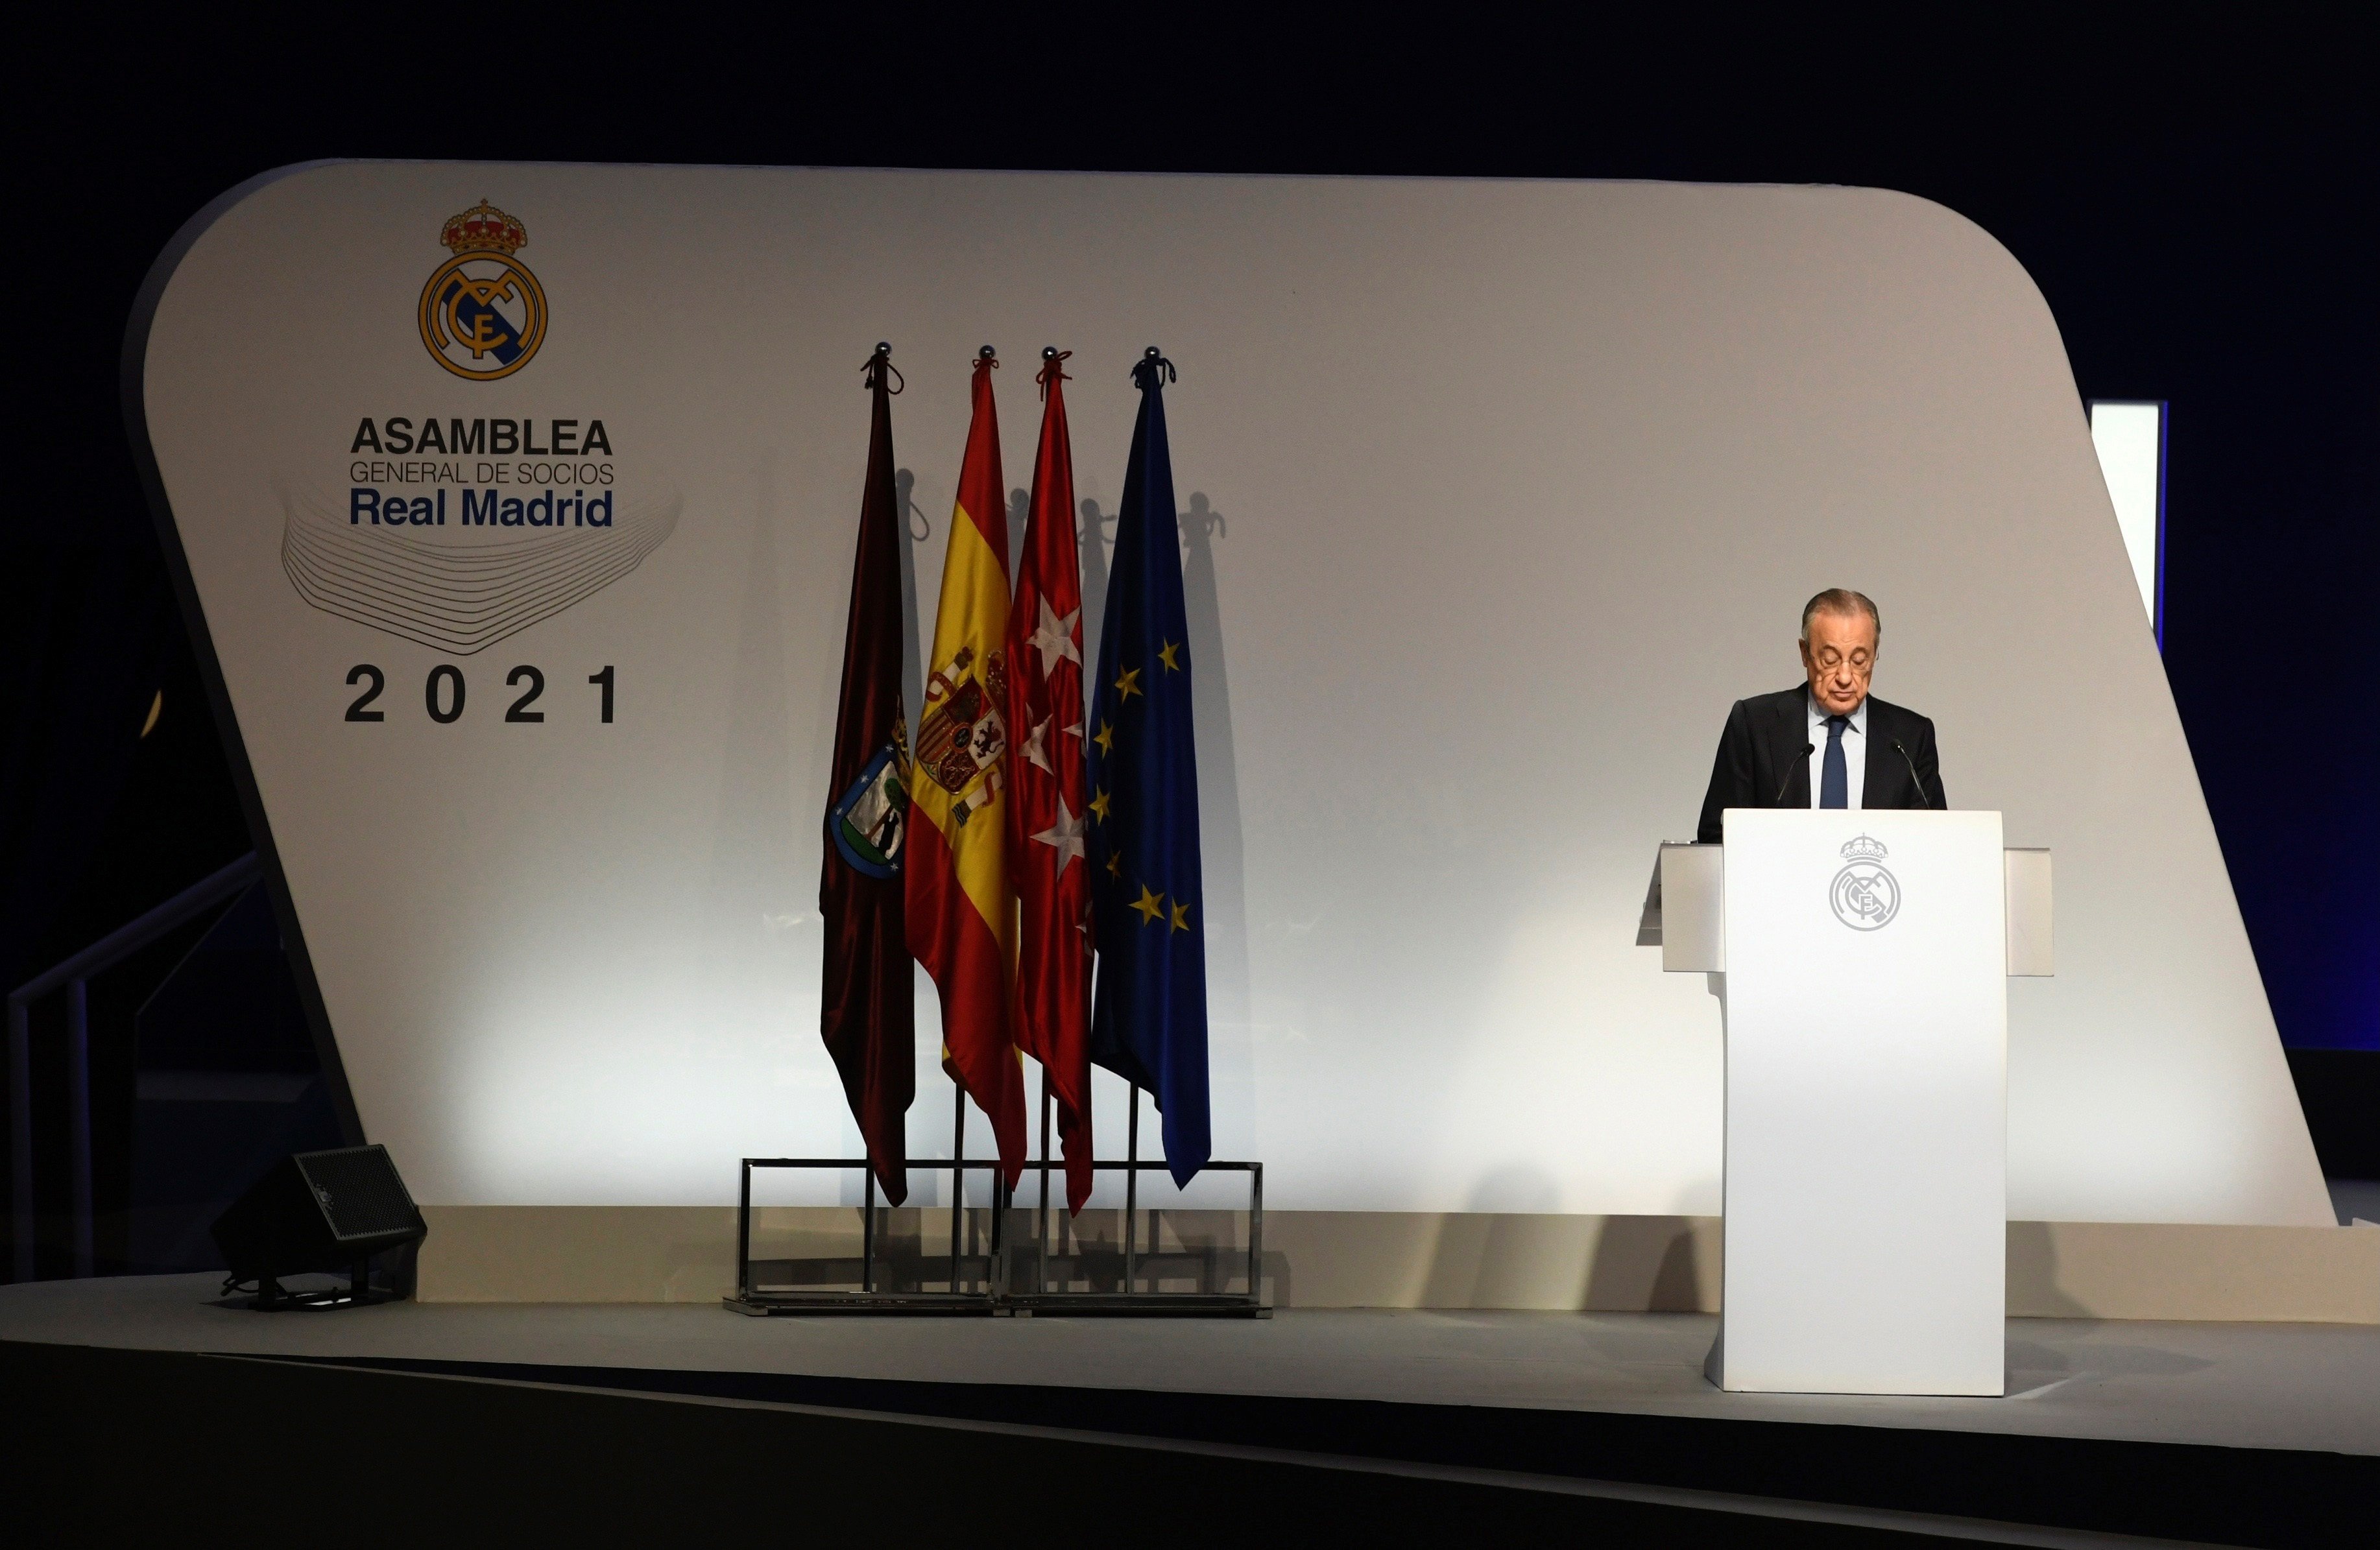 El plan maquiavélico de Florentino Pérez contra el Barça se pone en marcha con una reunión secreta en Madrid